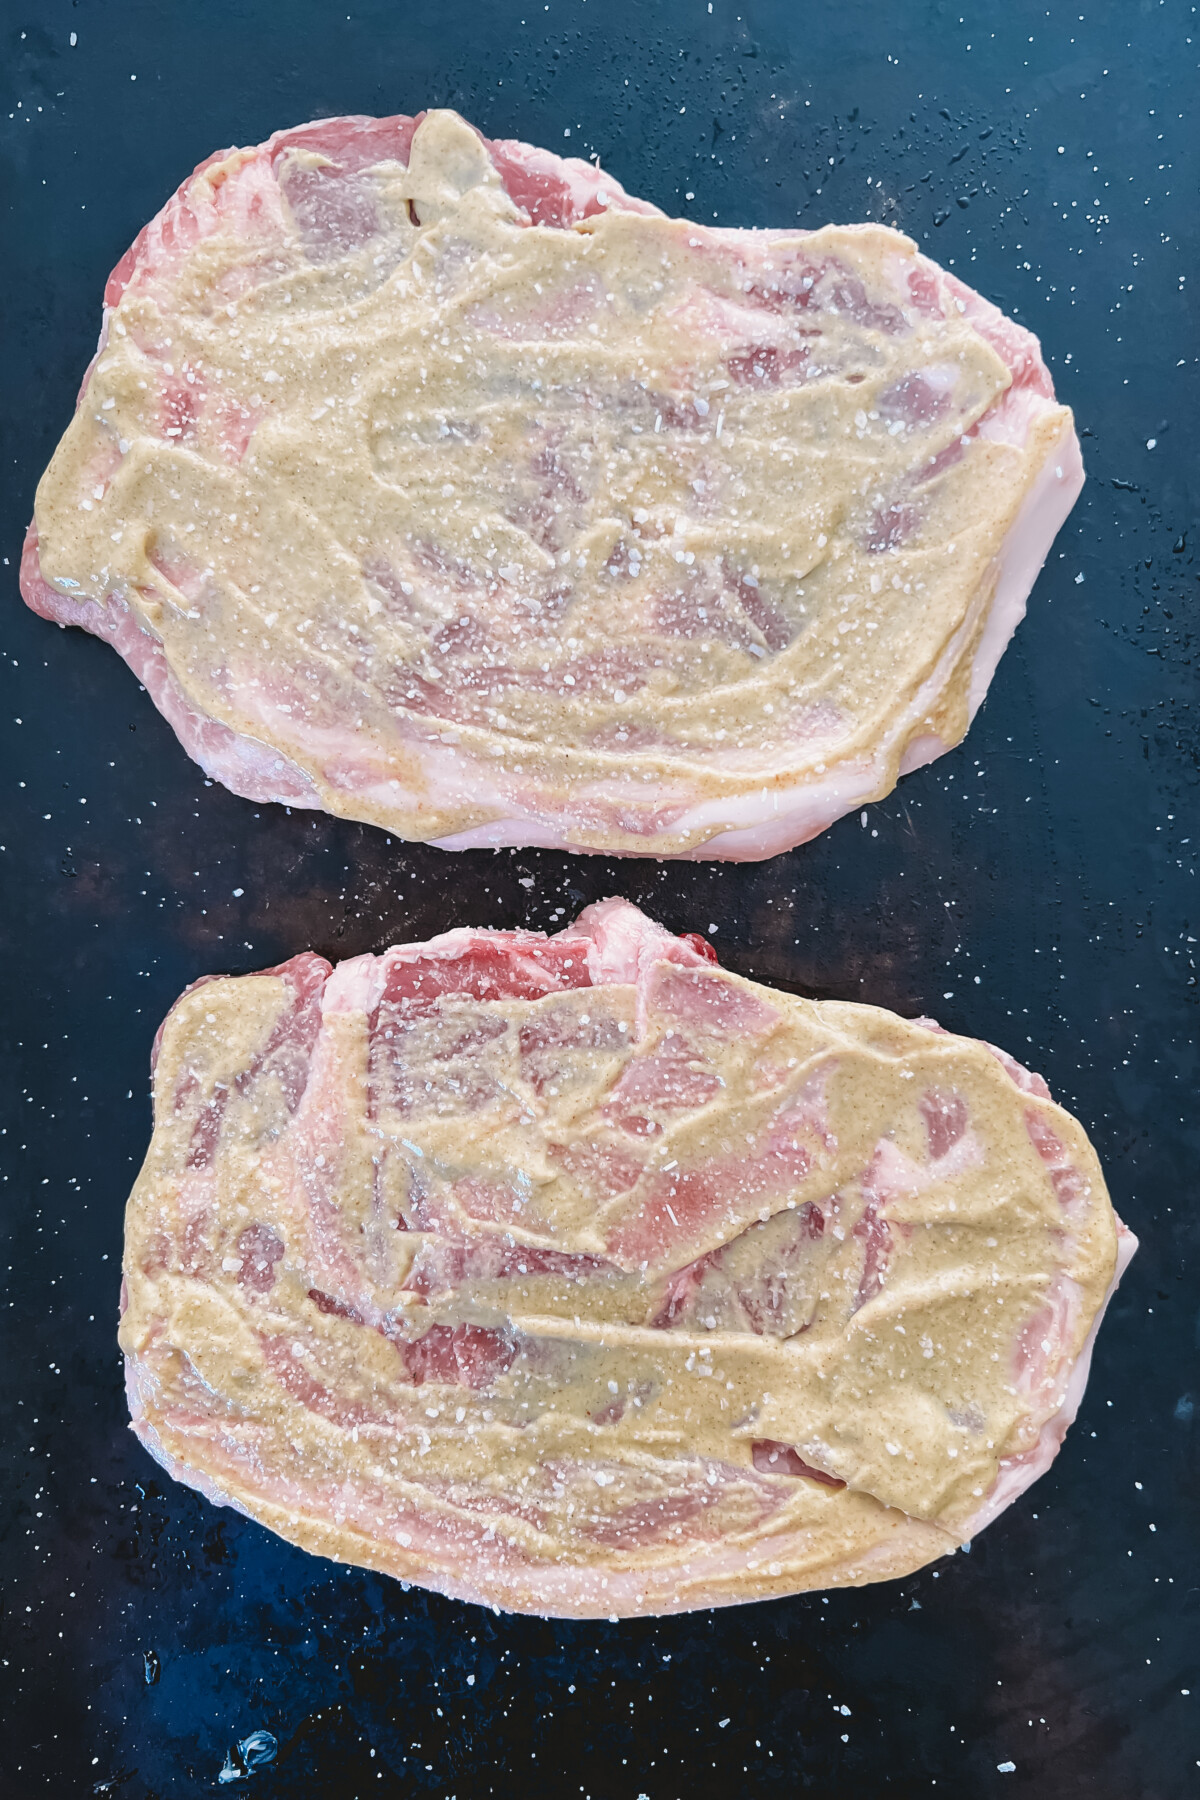 2 bone-in pork steaks slathered in mustard sauce.